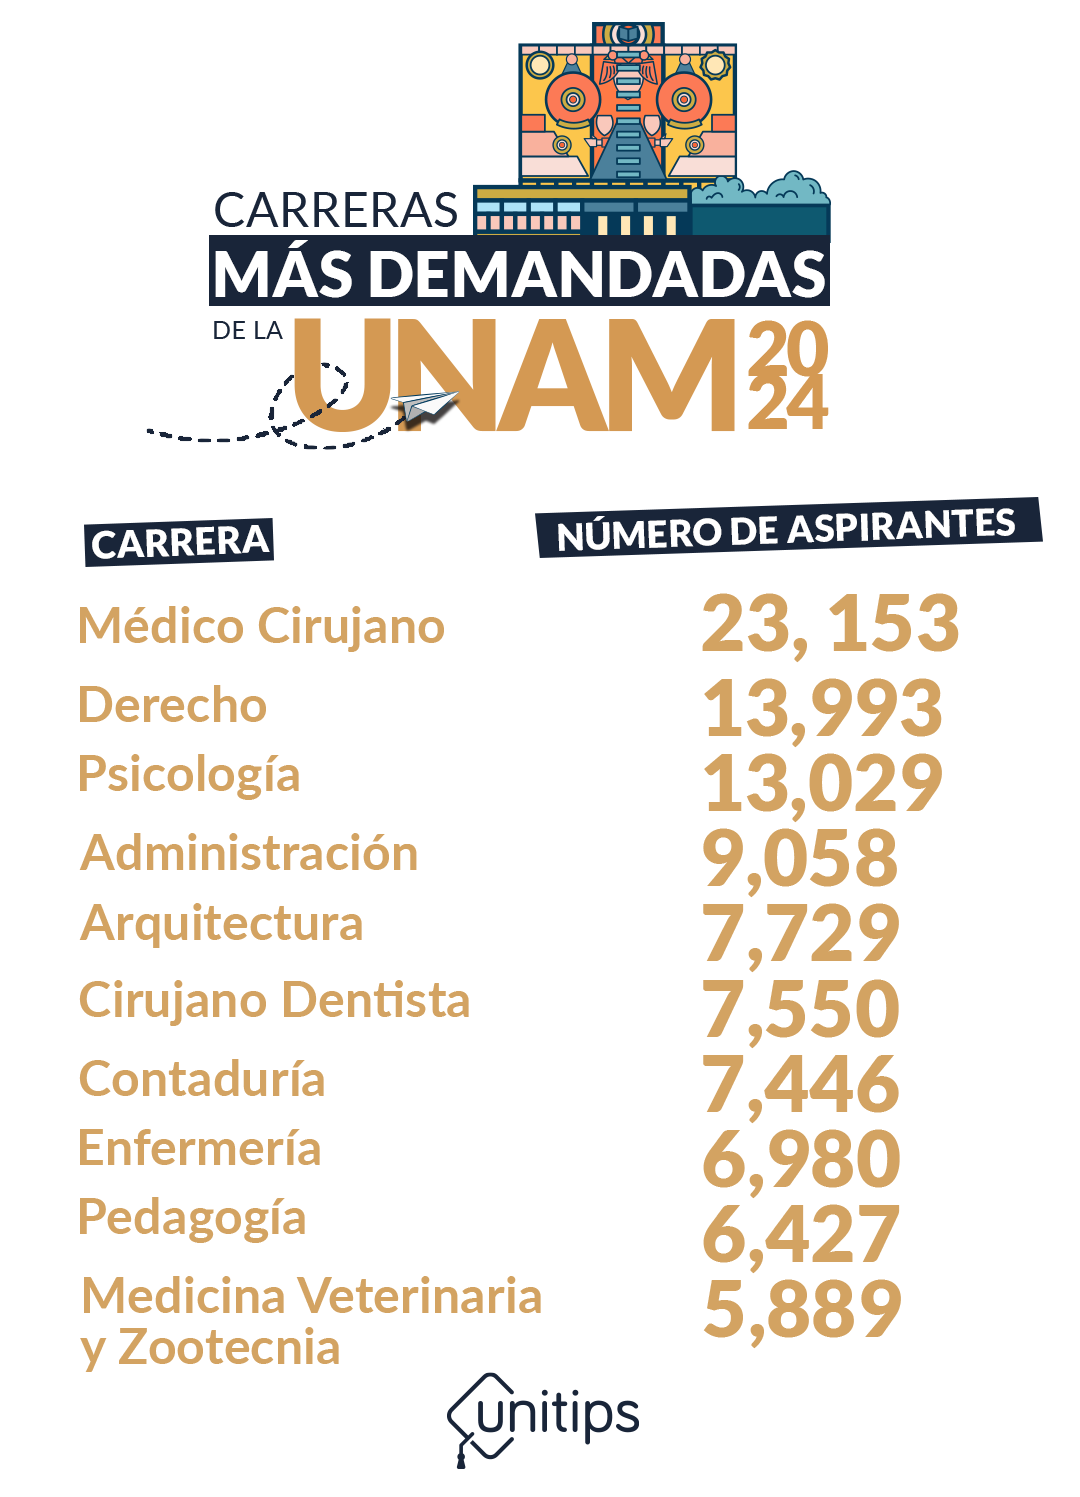 Imagen-interna-carreras-mas-demandadas-UNAM